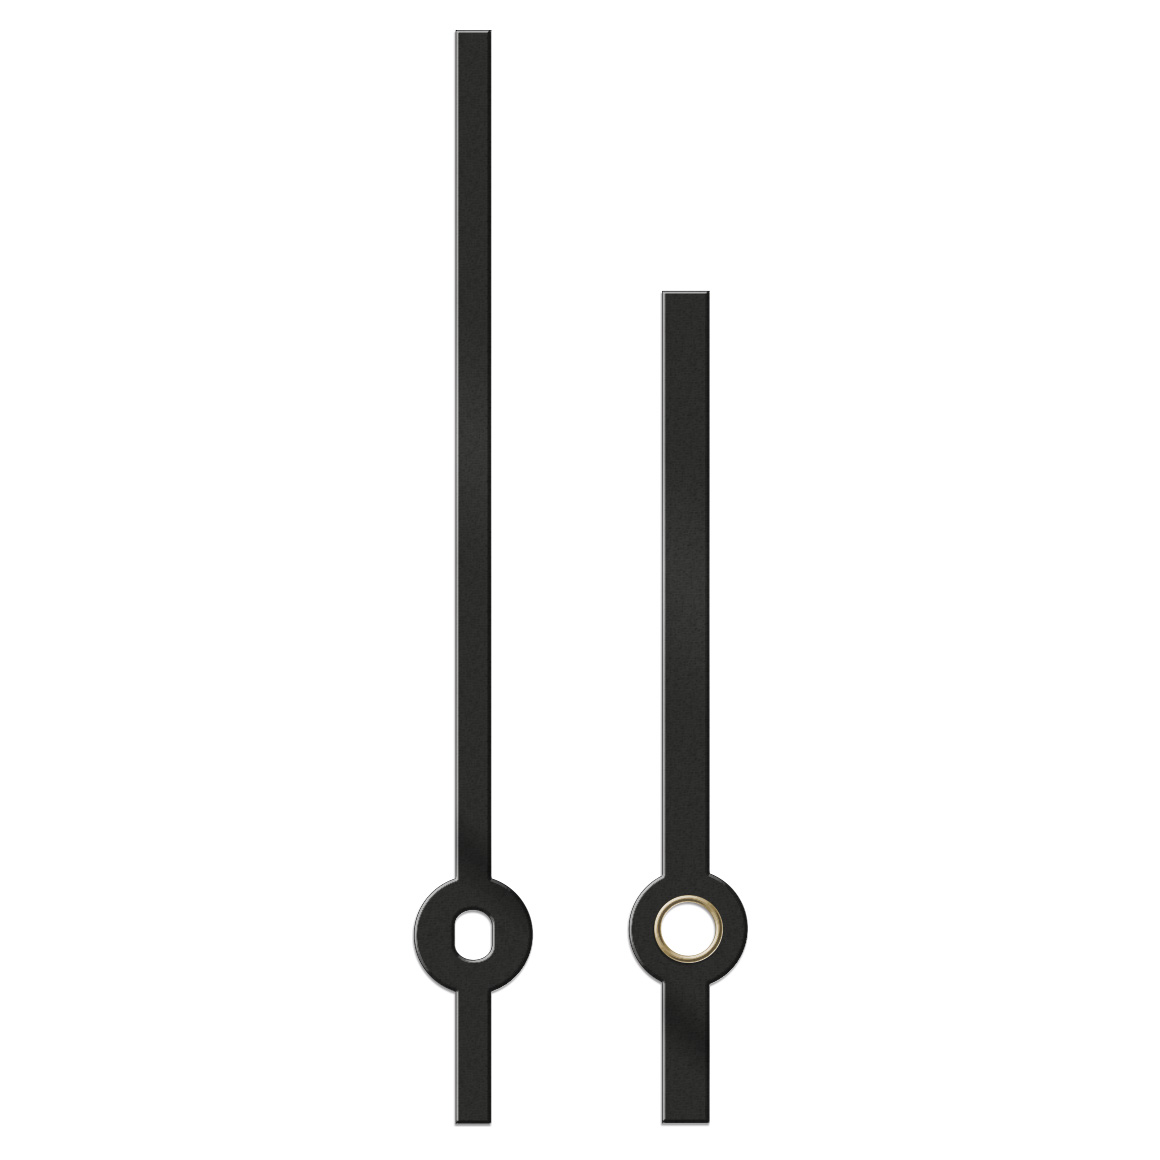 Paire d'aiguilles, baton, longueur 76 mm,
aluminium, noir, pour grandes horloges